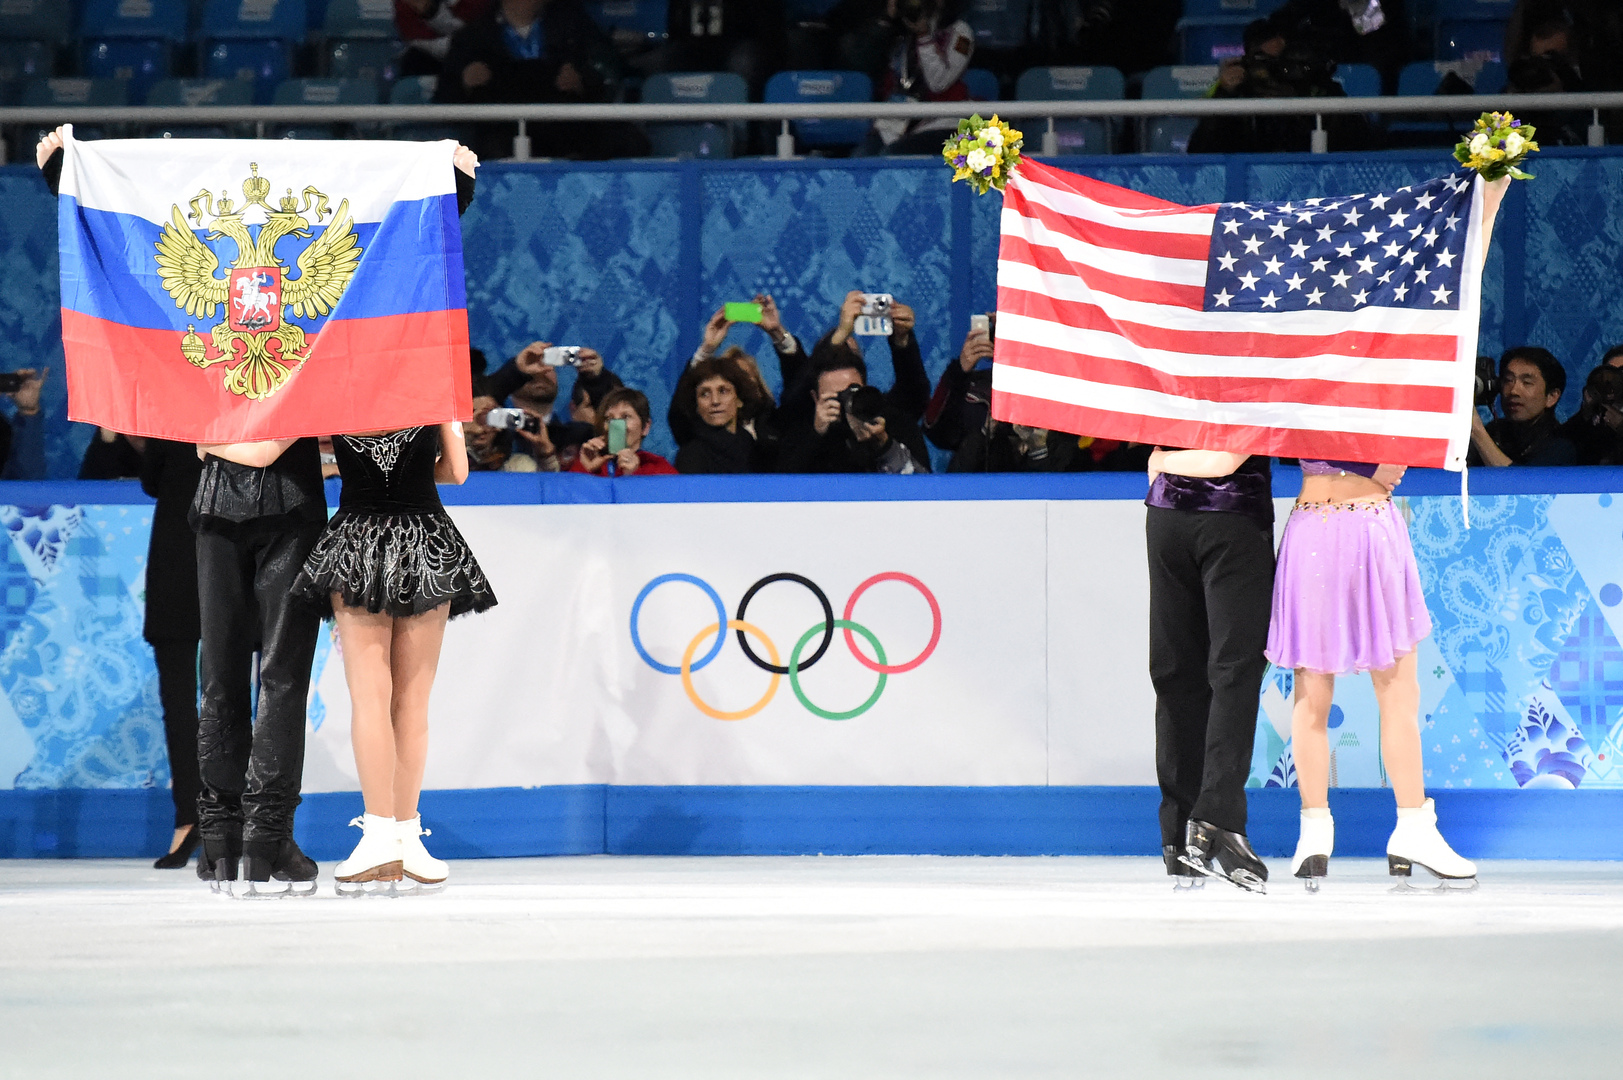 البطلة الأولمبية 3 مرات رودنينا: الأمريكيون يدللون أنفسهم بالميداليات على حساب الروس